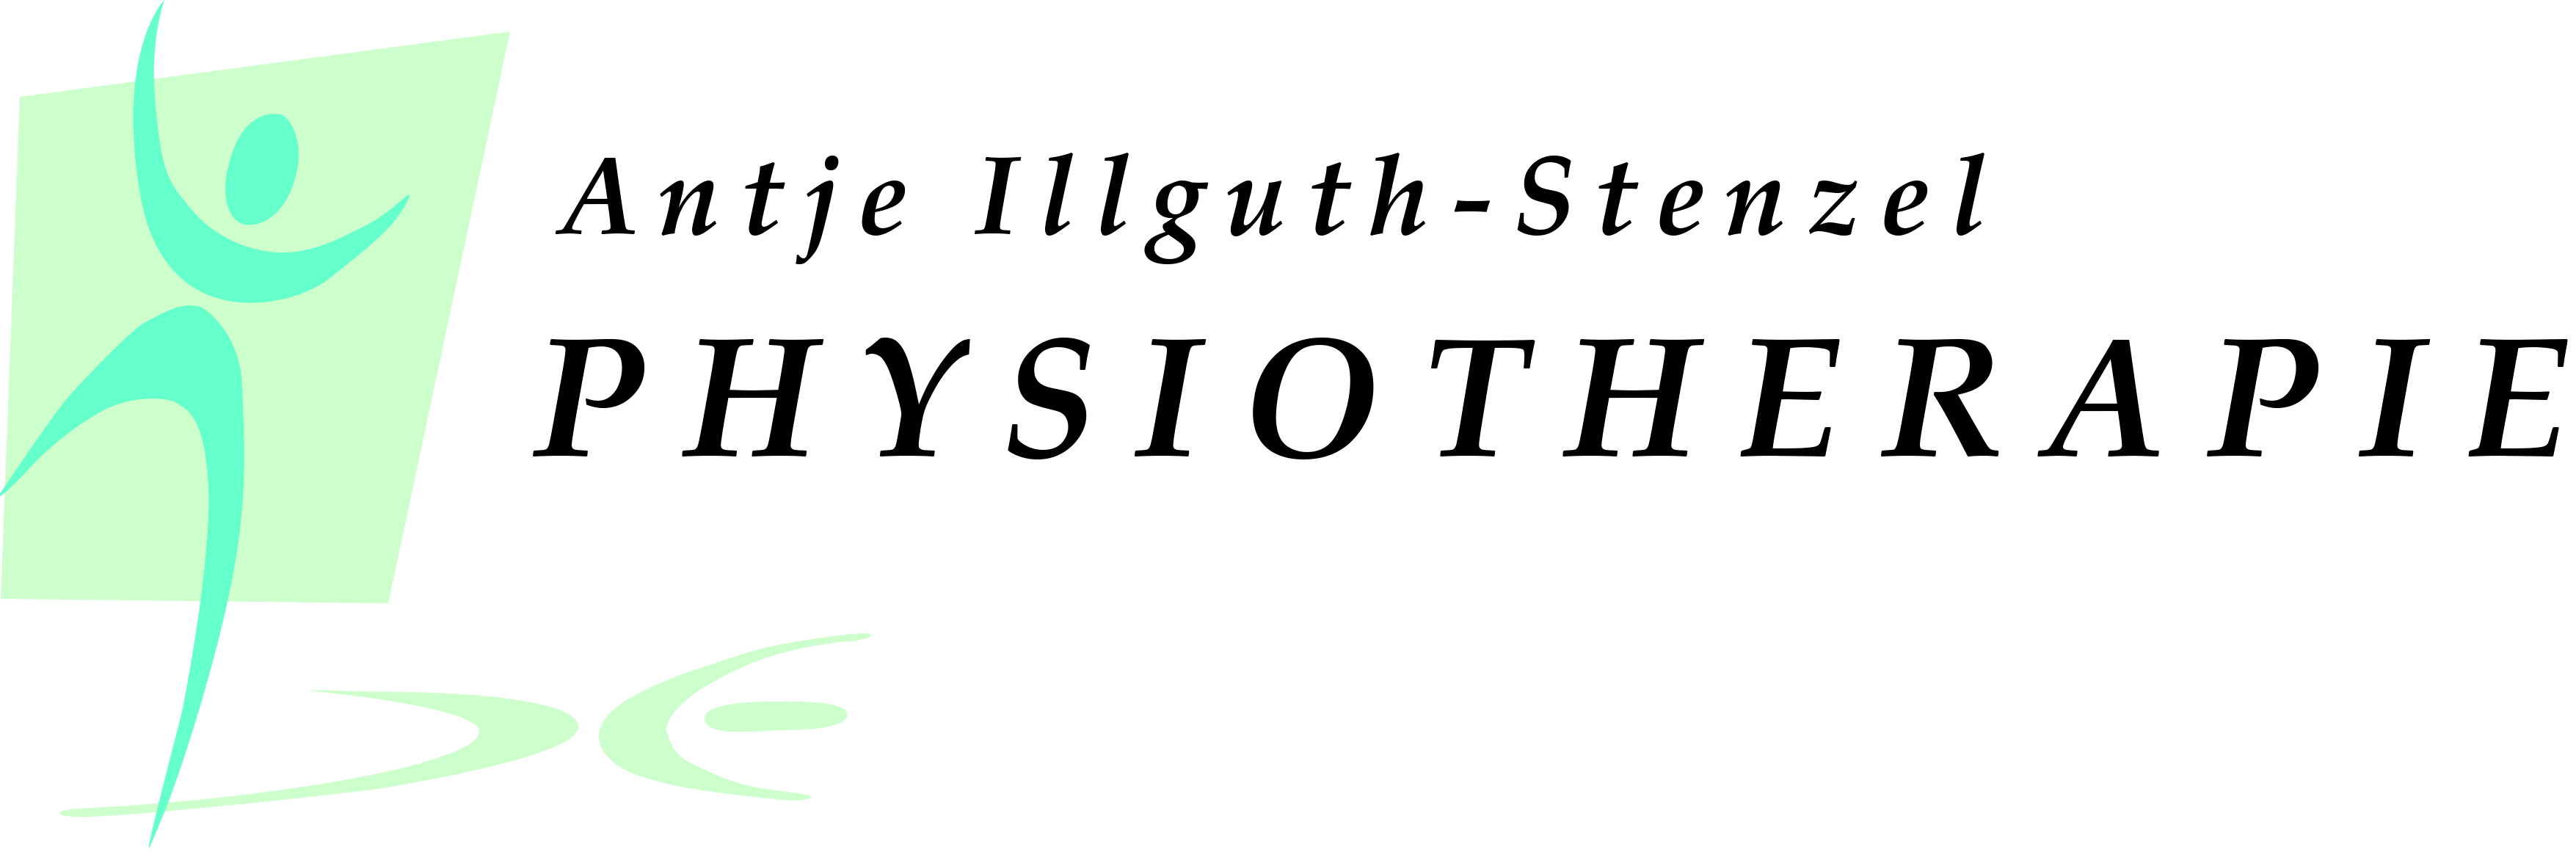 Physiotherapie Illguth-Stenzel Logo